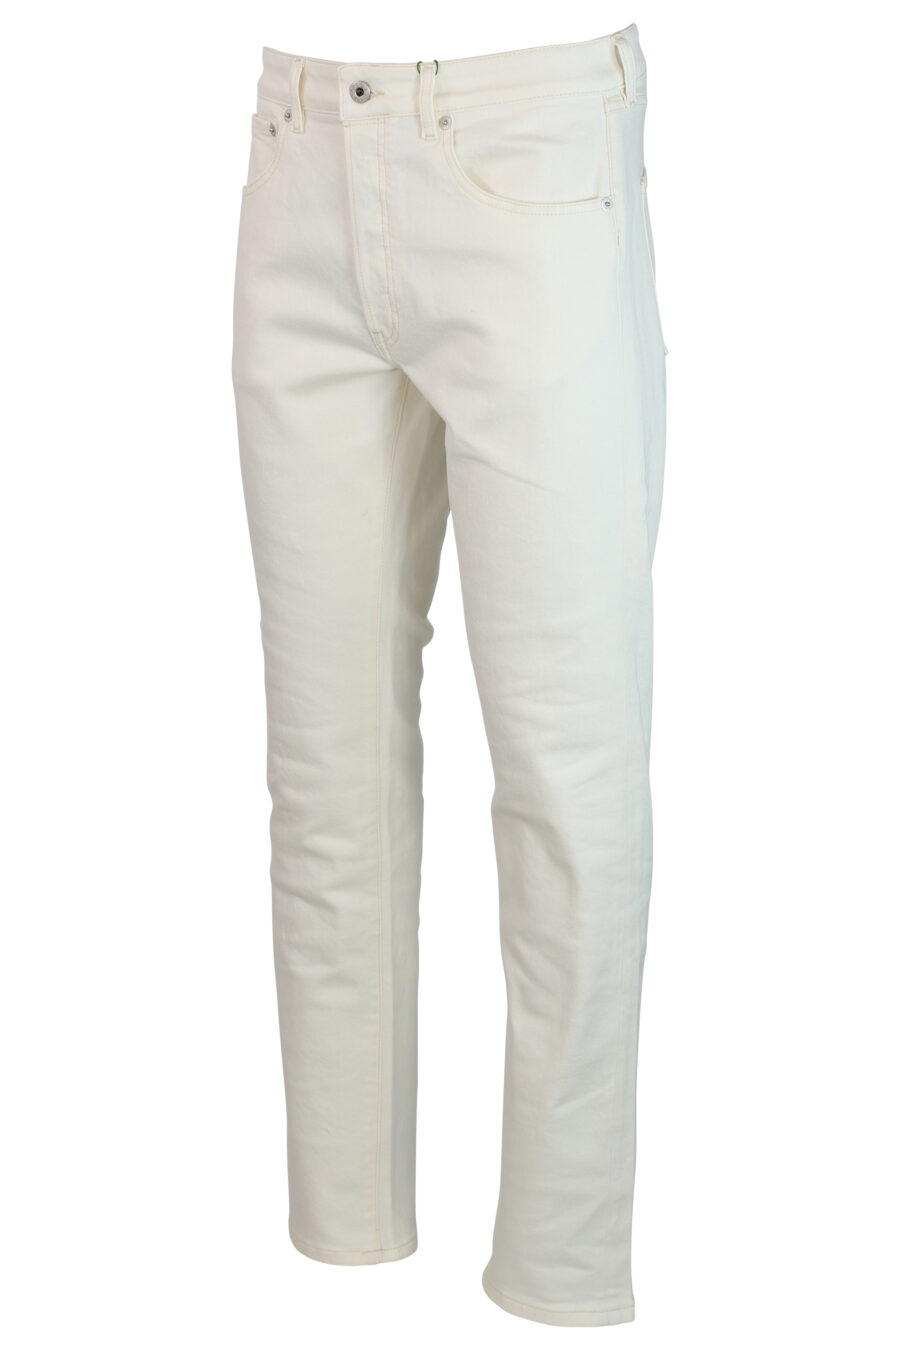 Pantalón vaquero blanco con minilogo - IMG 0291